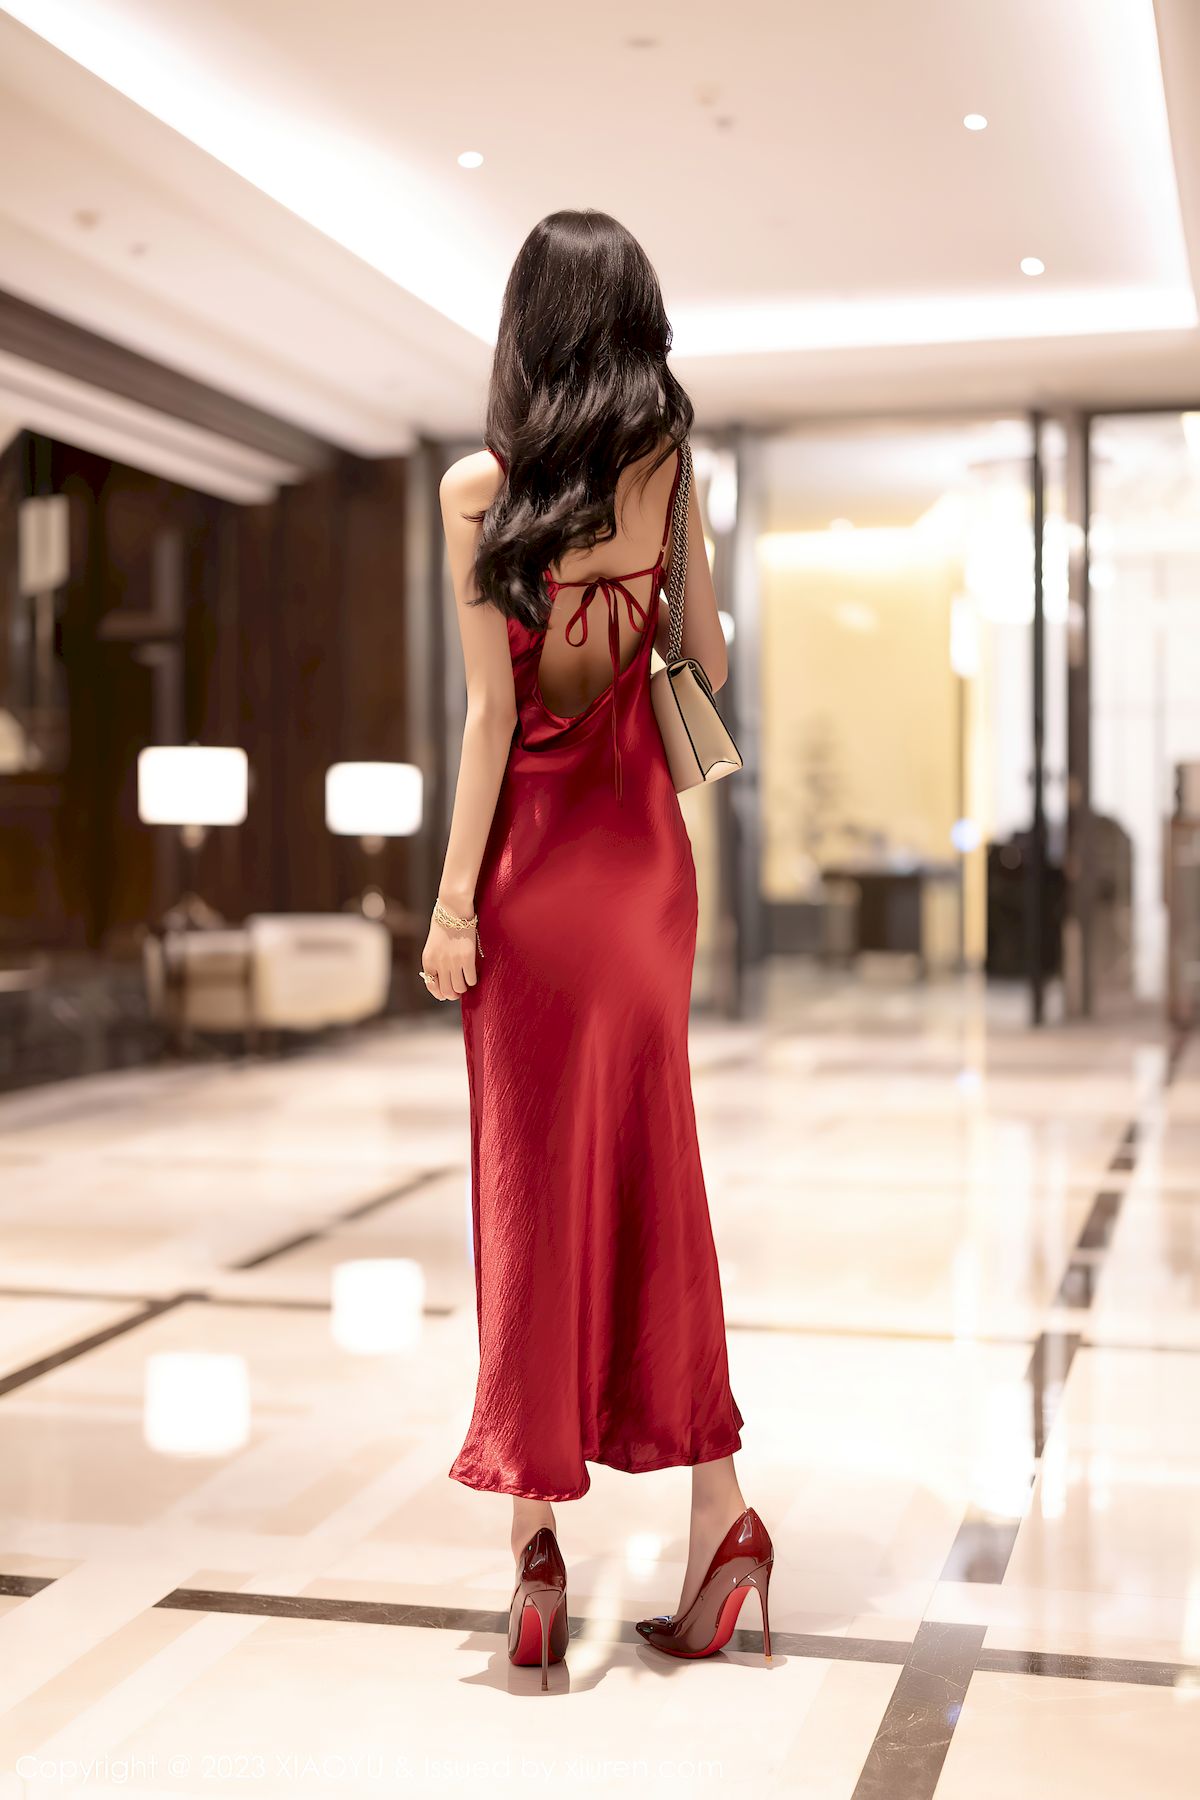 语画界美女模特程程程-红色礼裙黑色蕾丝服饰海南旅拍